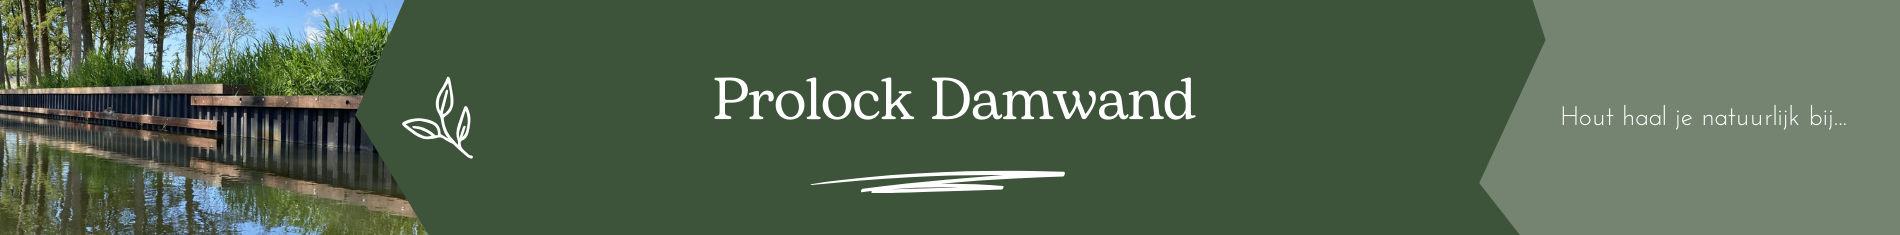 Prolock Damwand